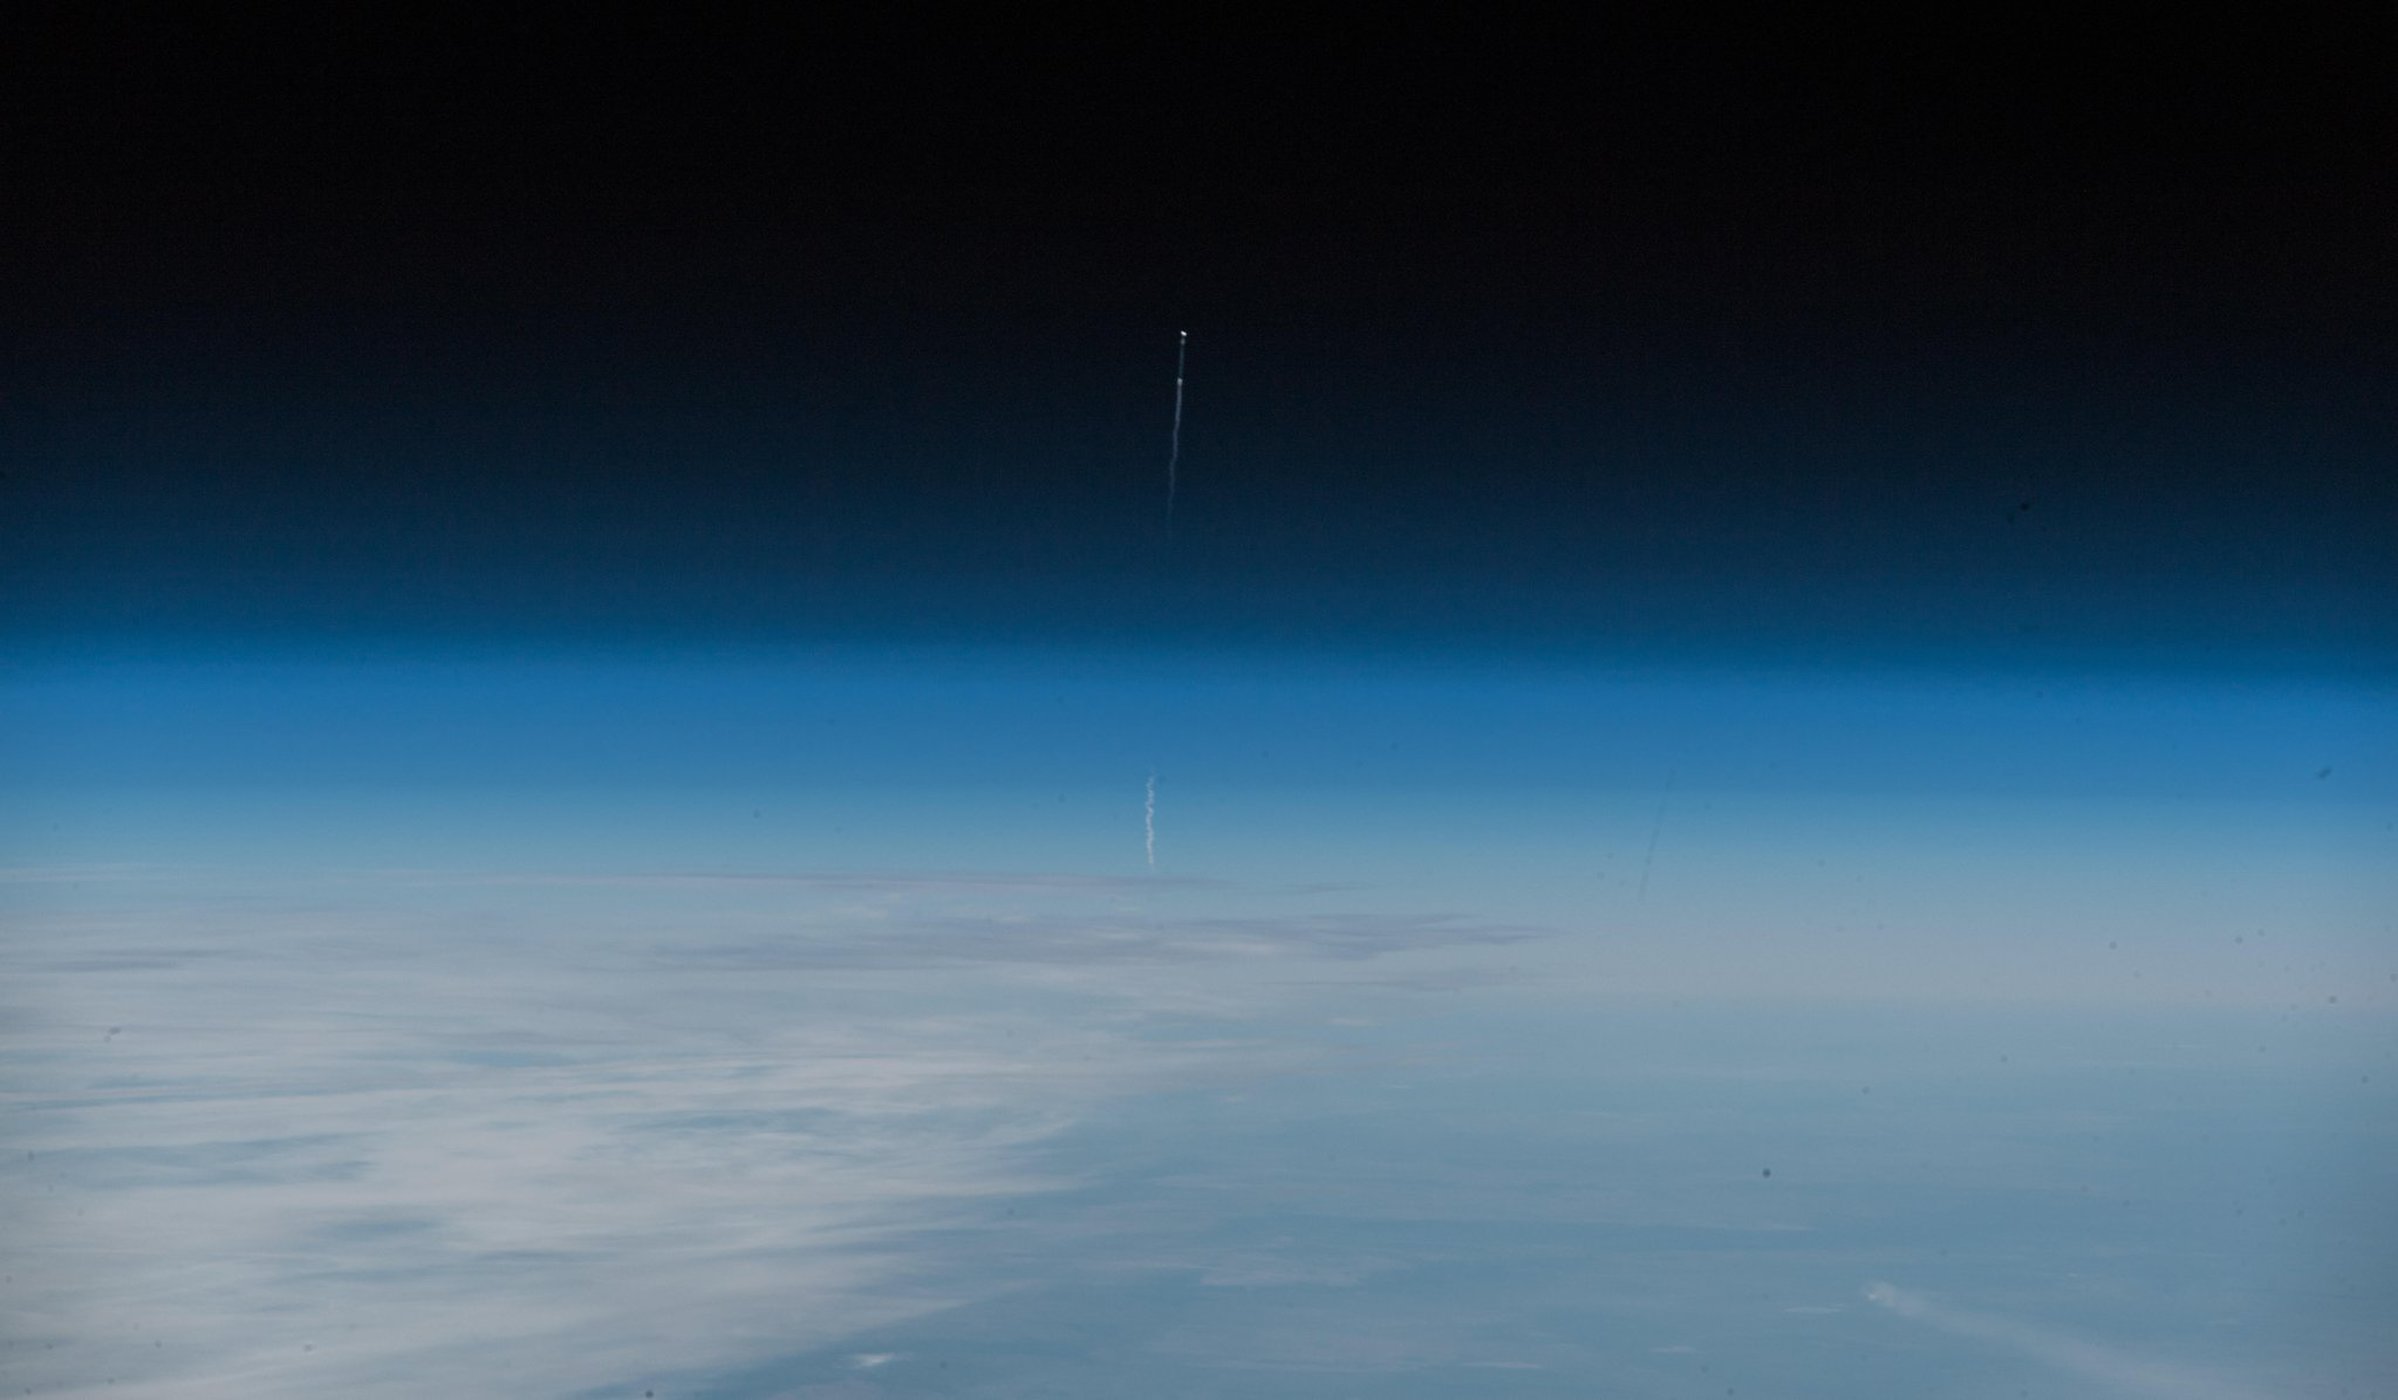 ภาพการปล่อยจรวดโซยุซเมื่อวันที่ 11 ตุลาคม ถ่ายจากสถานีอวกาศนานาชาติ โดยอะเล็กซานเดอร์ เกิสต์ 